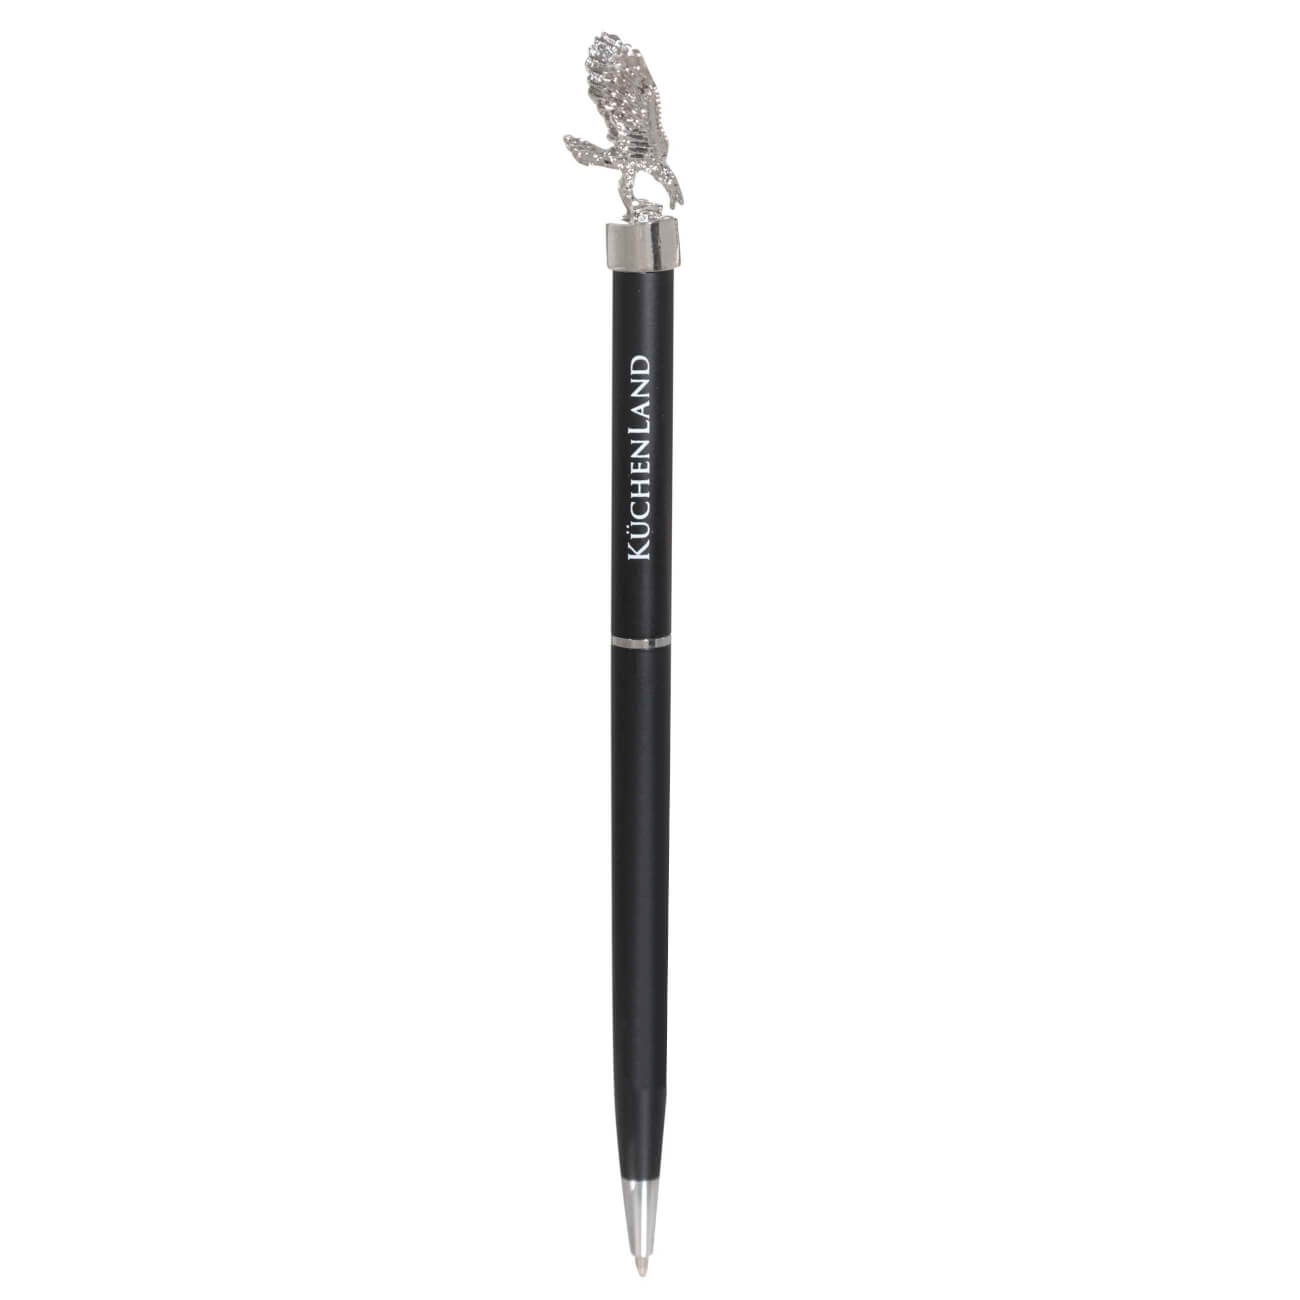 Ручка шариковая, 15 см, с фигуркой, сталь, черная, Орел, Draw figure римский орел орел завоеватель